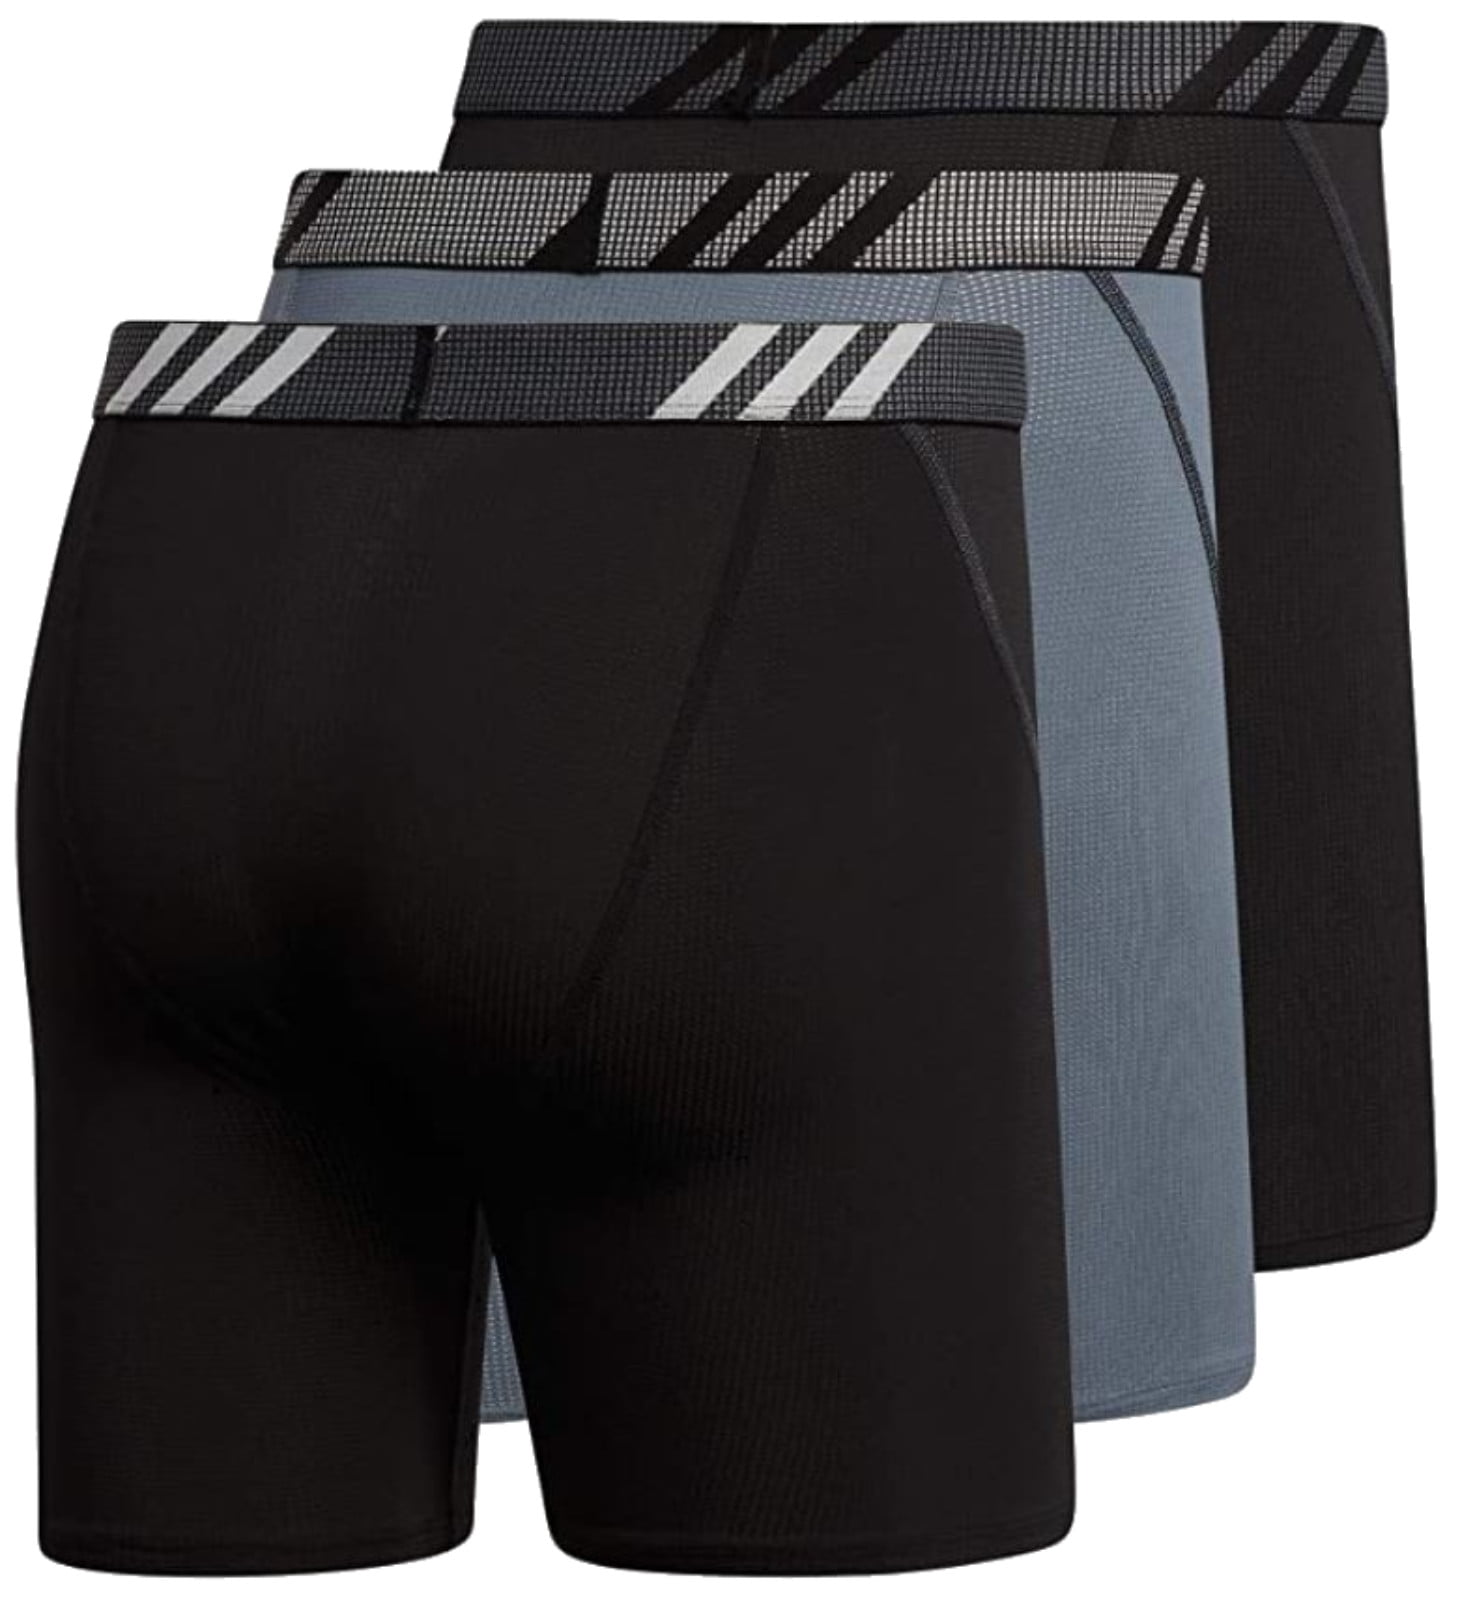 Adidas Men's Sport Mesh Boxer Brief Underwear (3-Pack) � Black/Onix/Black  (S) 